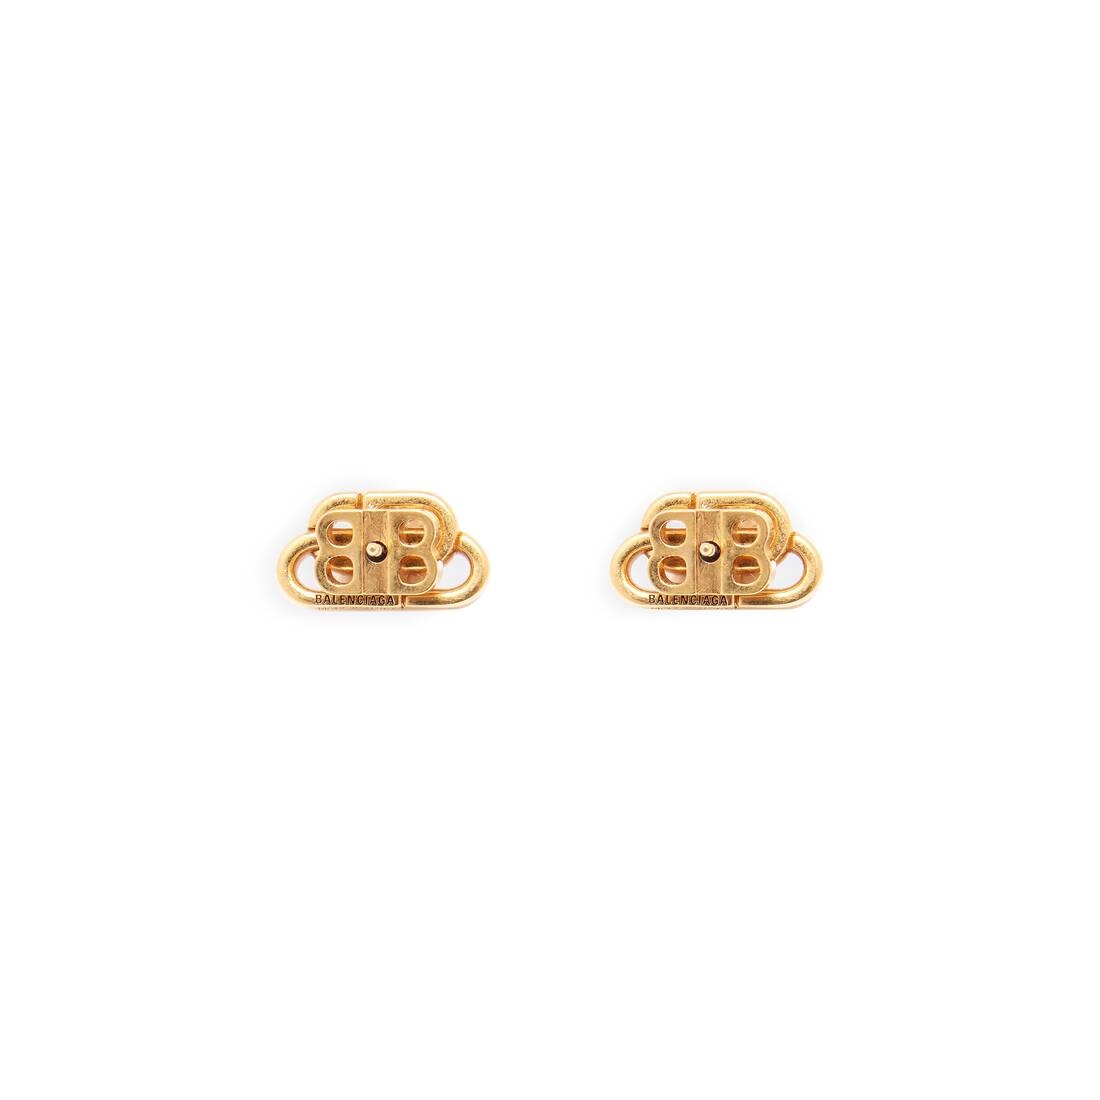 Bb Stud Xs Earrings in Gold - 2